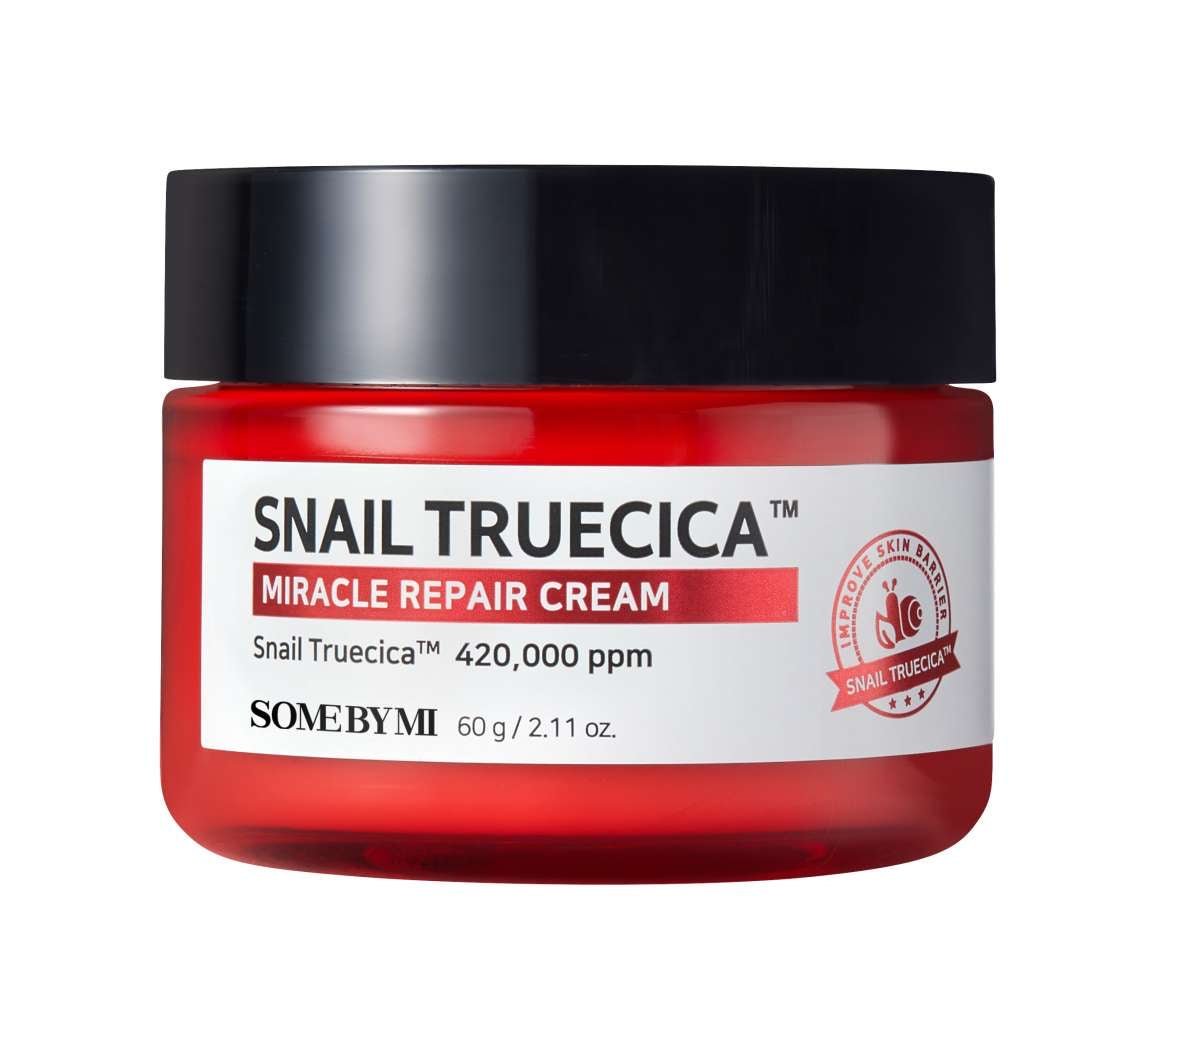 Snail TrueCICA Miracle Repair Cream - Beauty Matters